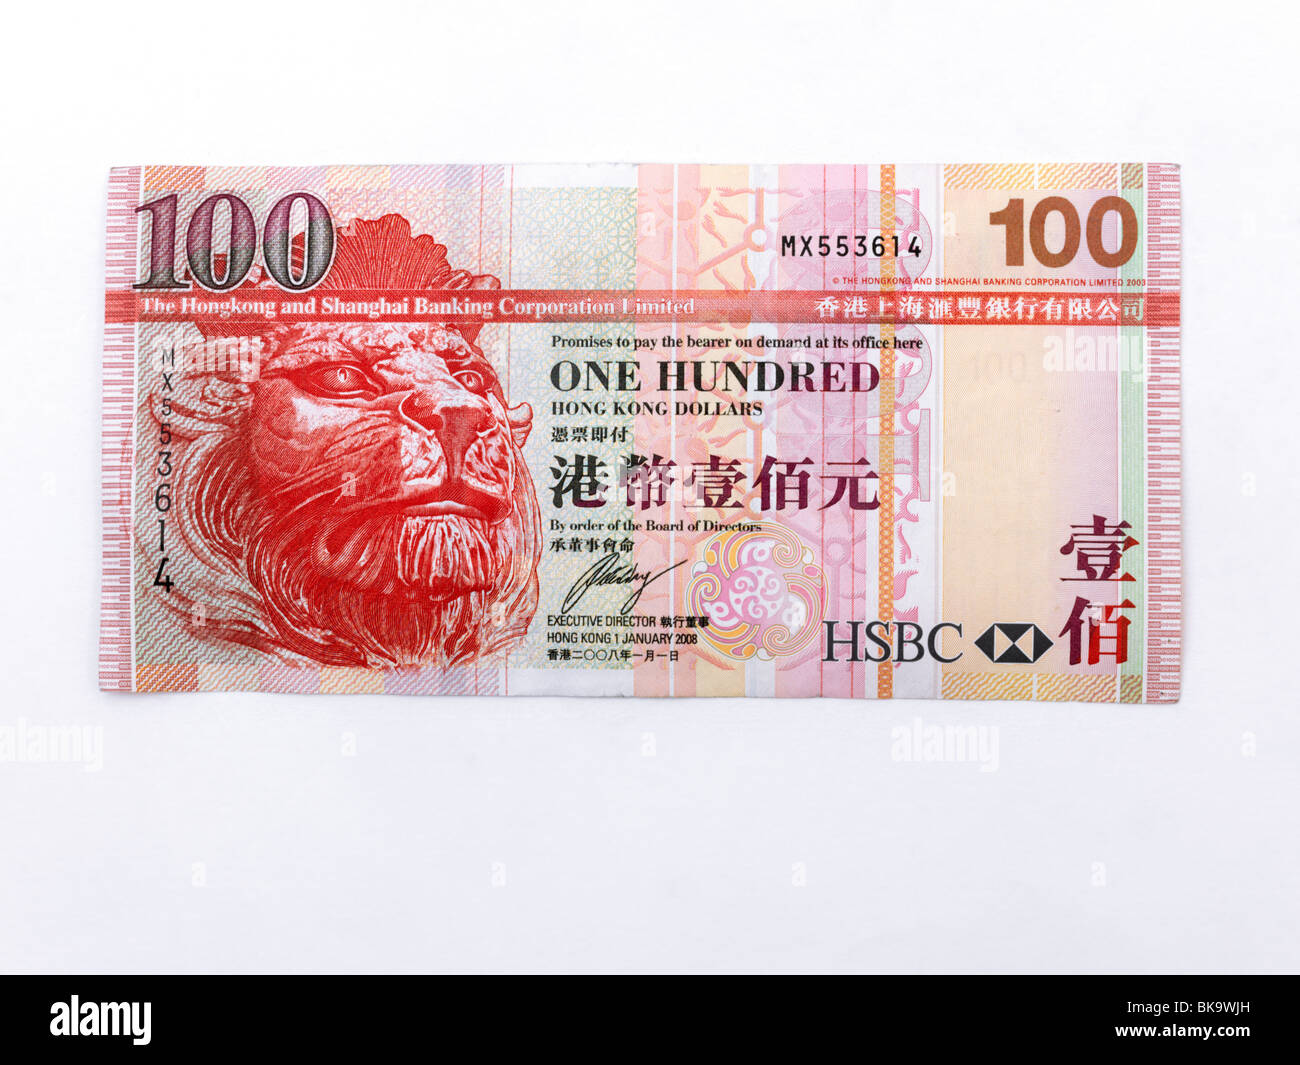 Hong Kong 100 Dollars Banknote Issued Hong Kong Shanghai Banking Corporation (HSBC) Stock Photo